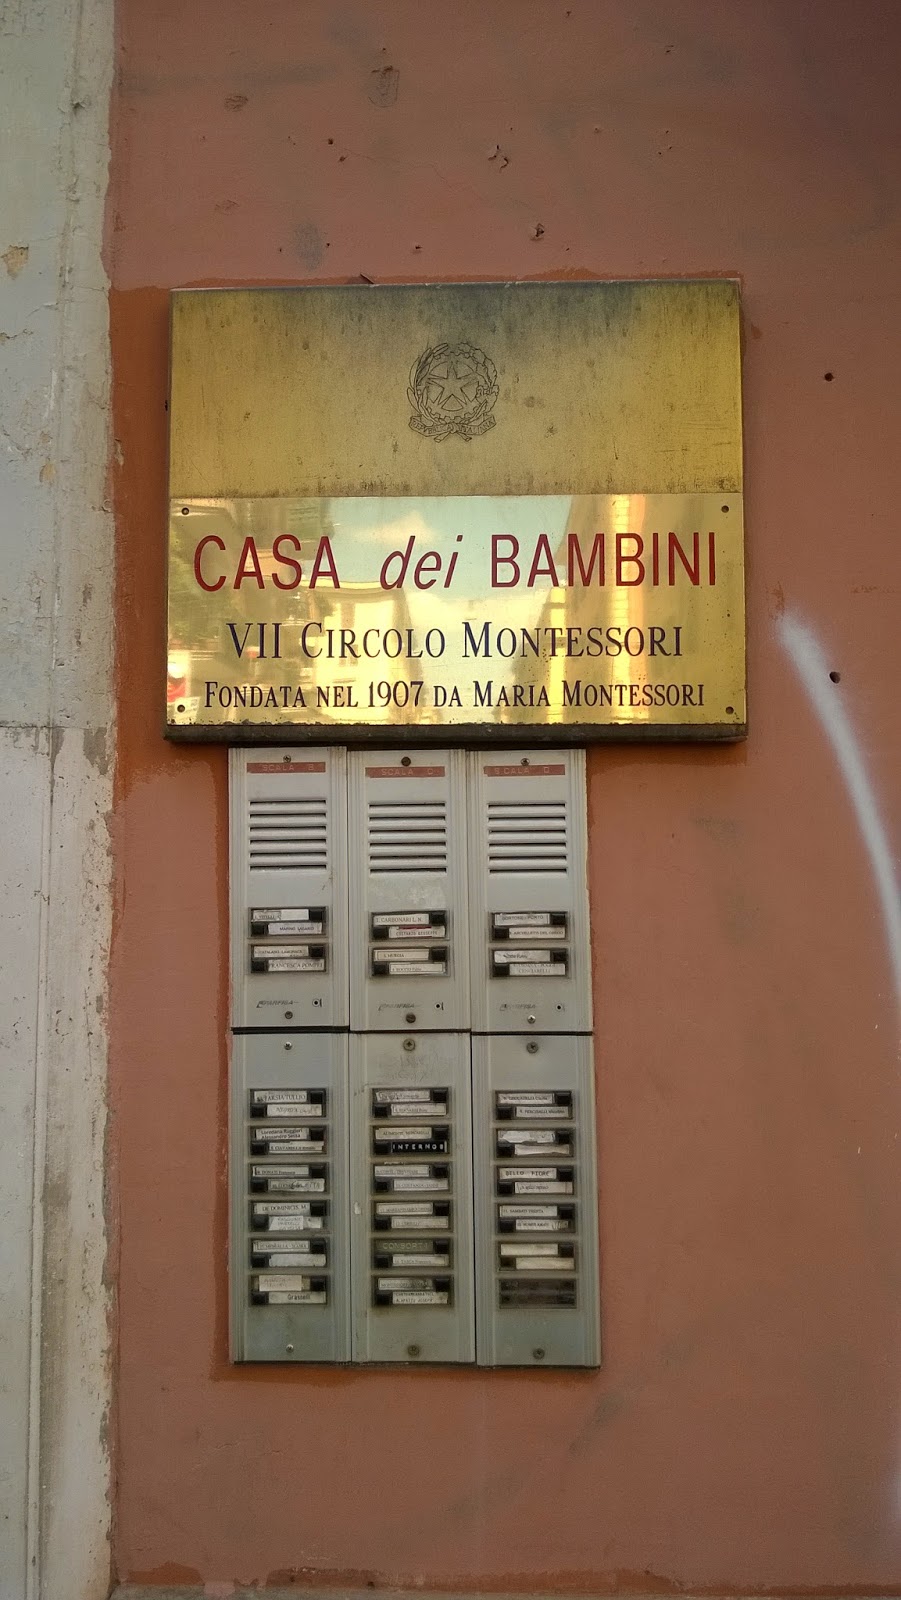 The First Casa dei Bambini